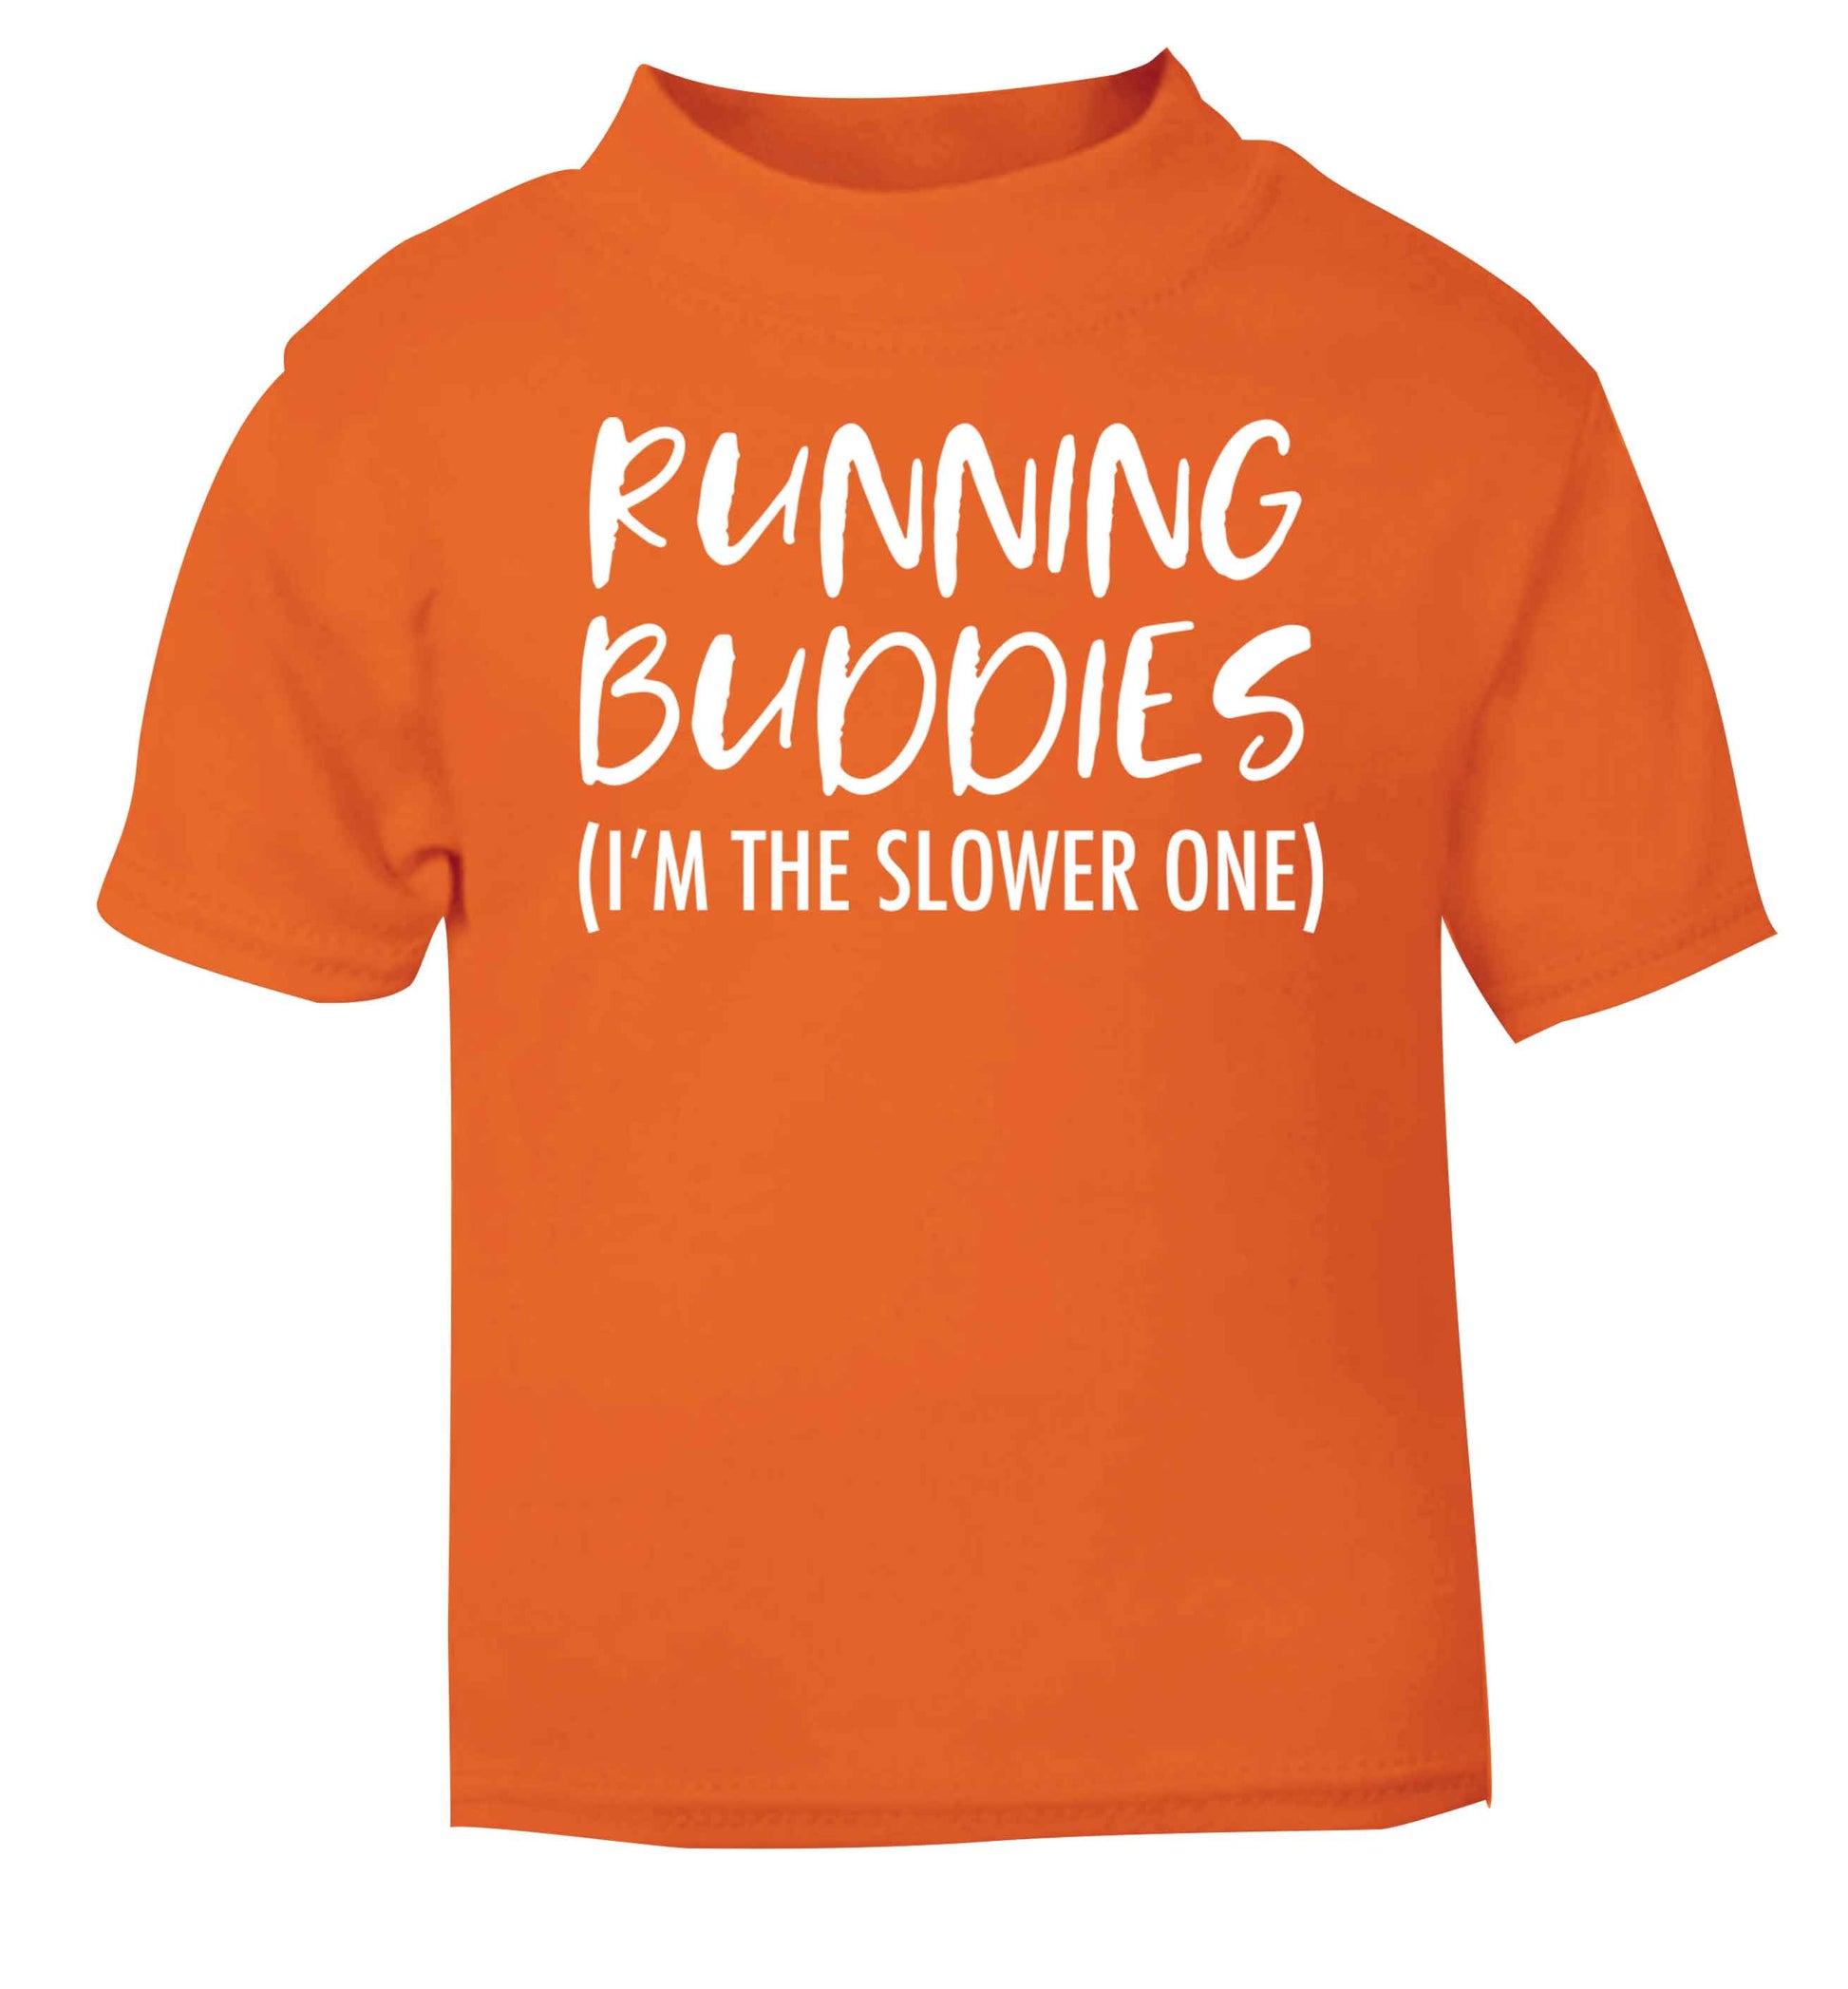 Running buddies (I'm the slower one) orange baby toddler Tshirt 2 Years